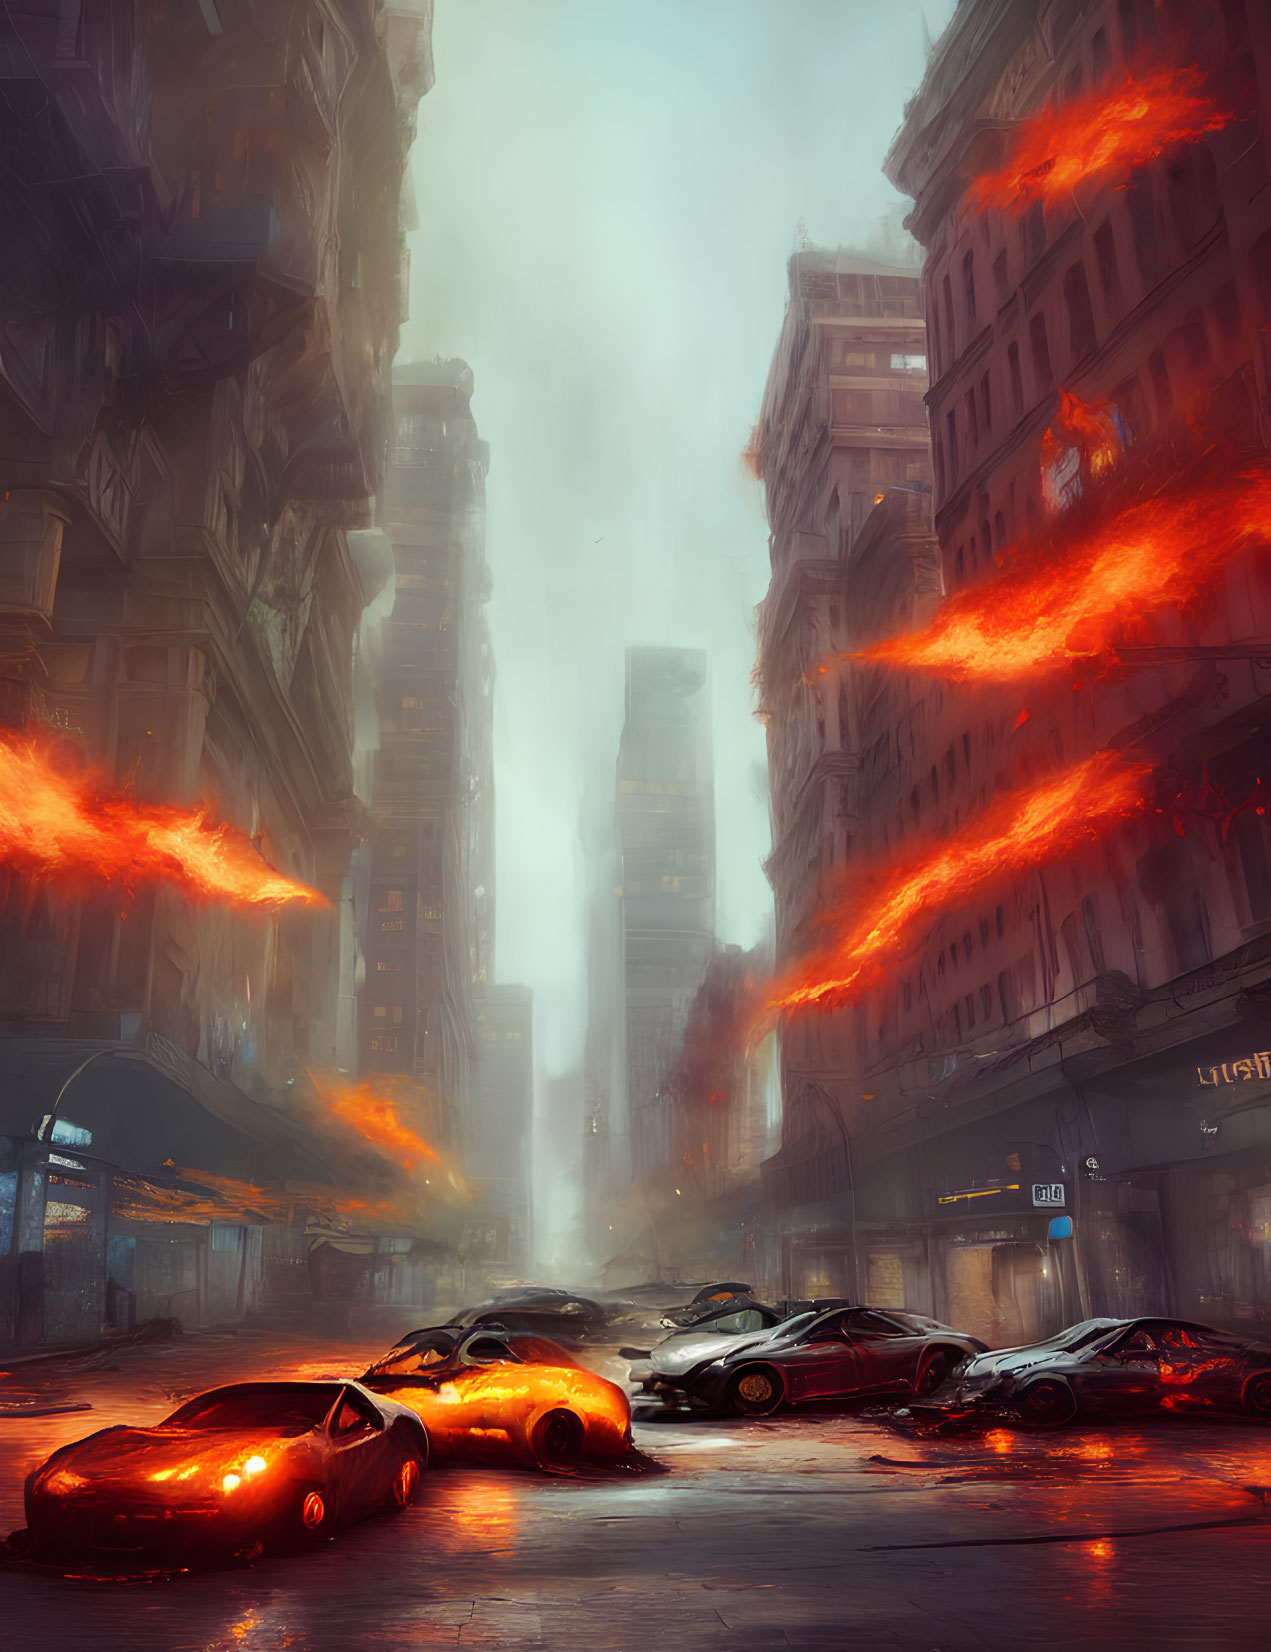 Abandoned glowing cars in dystopian cityscape with fiery streaks